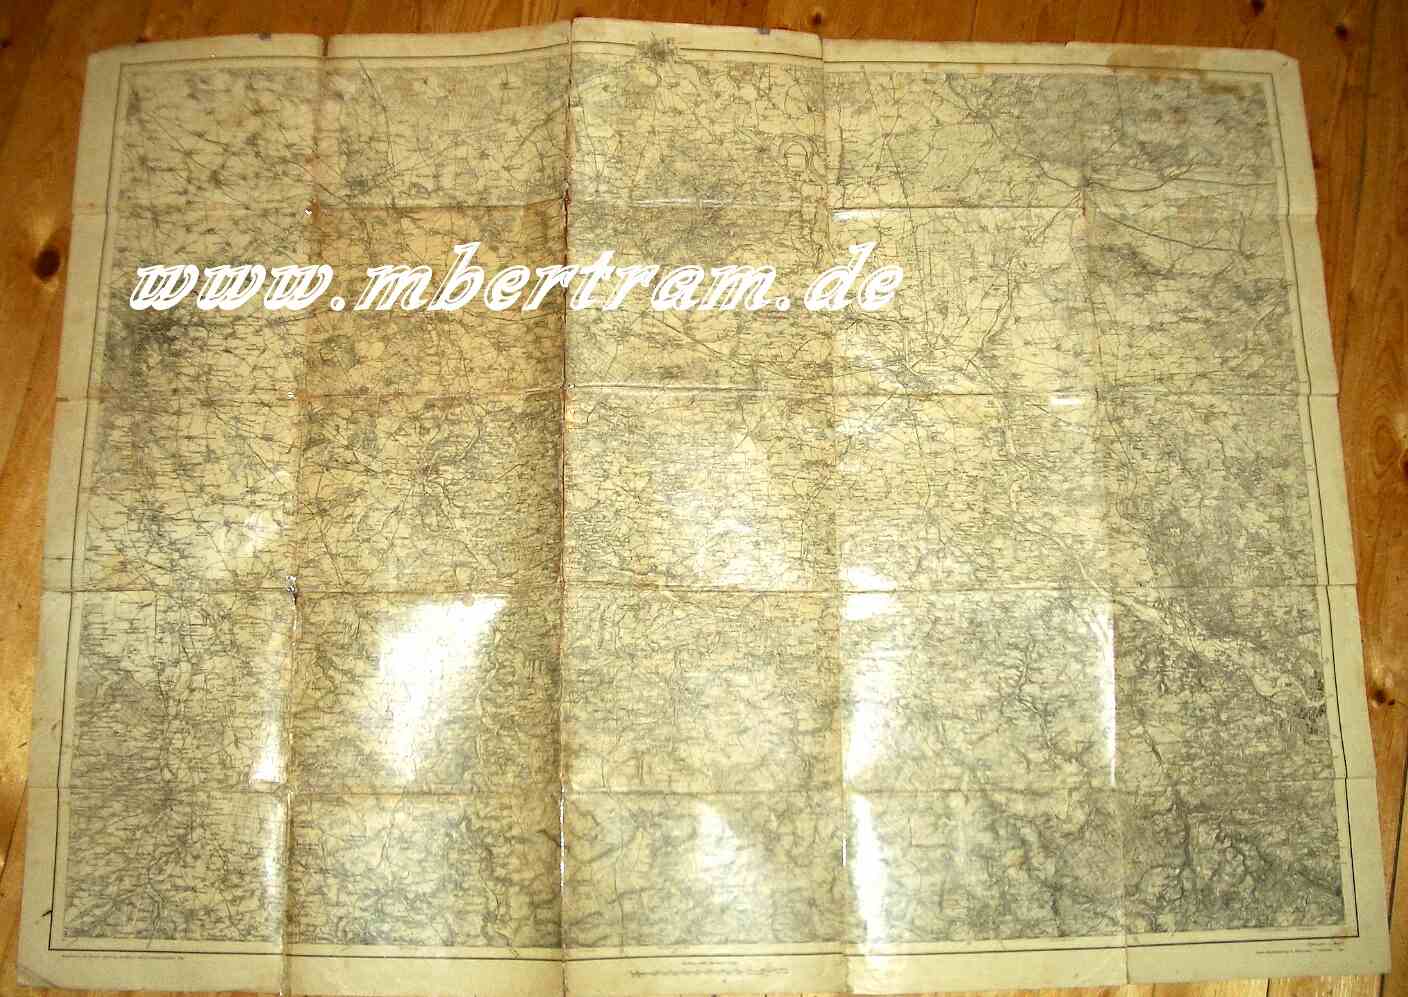 Landkarte für das Kaisermanöver 1912, 1:100000